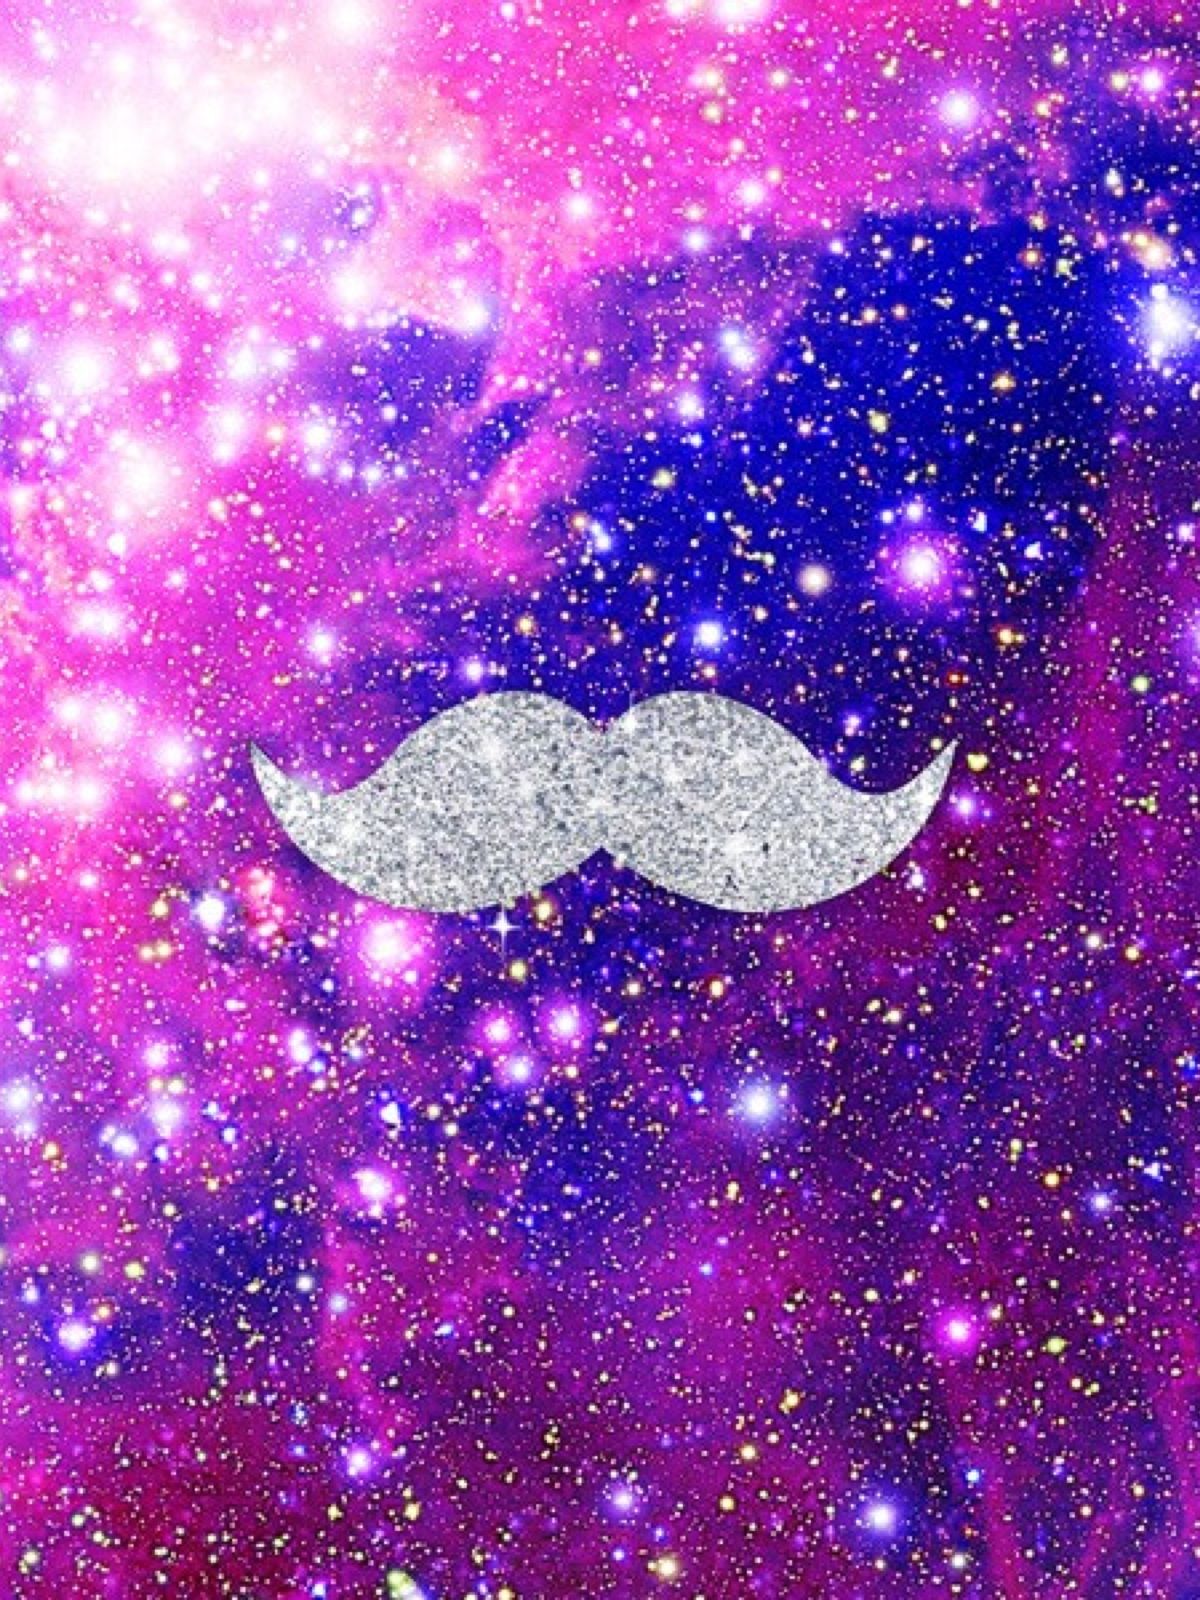 Galaxy Mustache Wallpaper - Galaxy Mustache - HD Wallpaper 